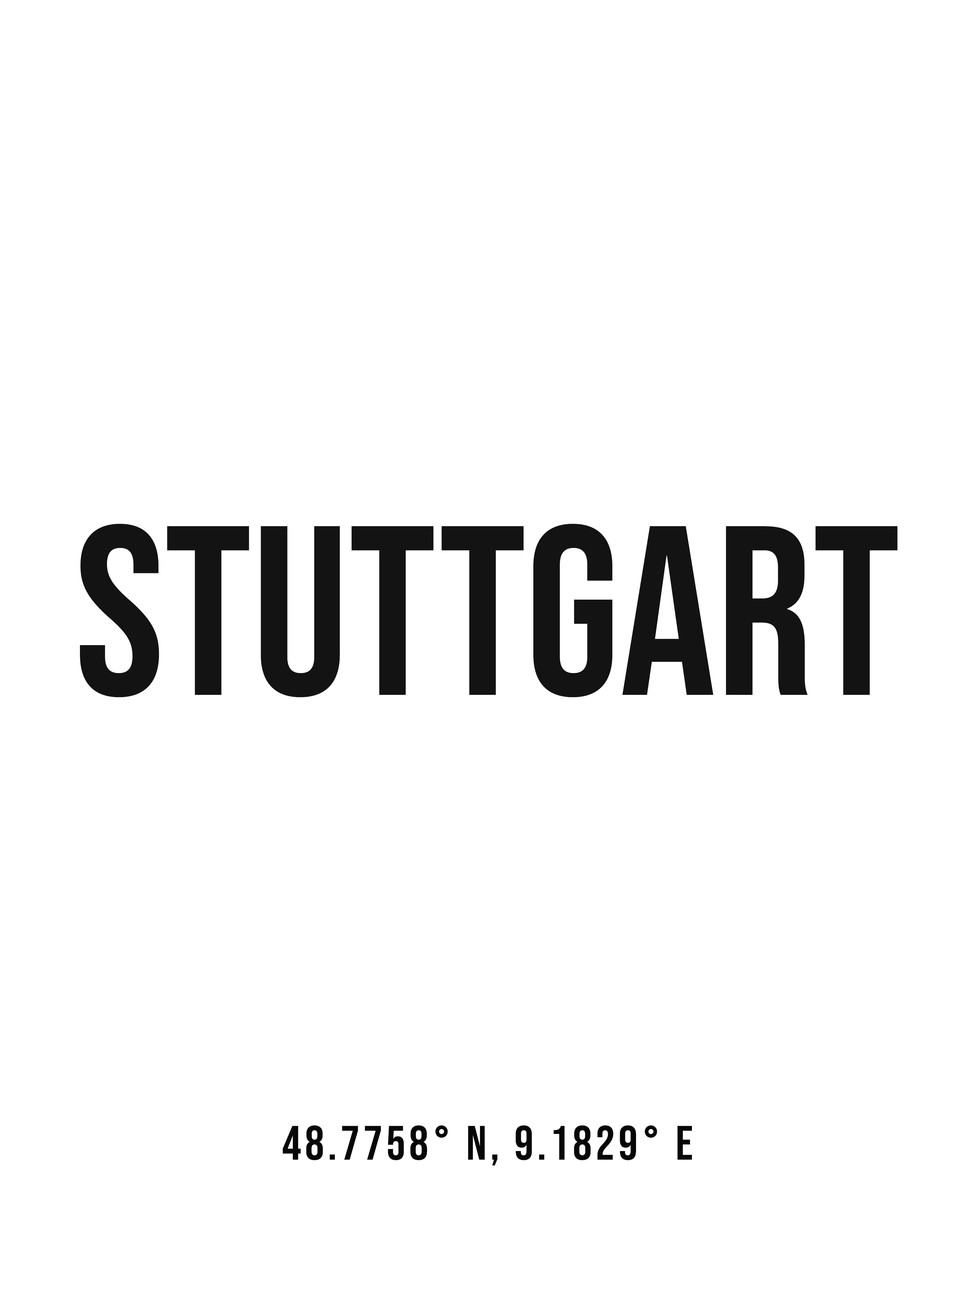 Illustration Stuttgart simple coordinates